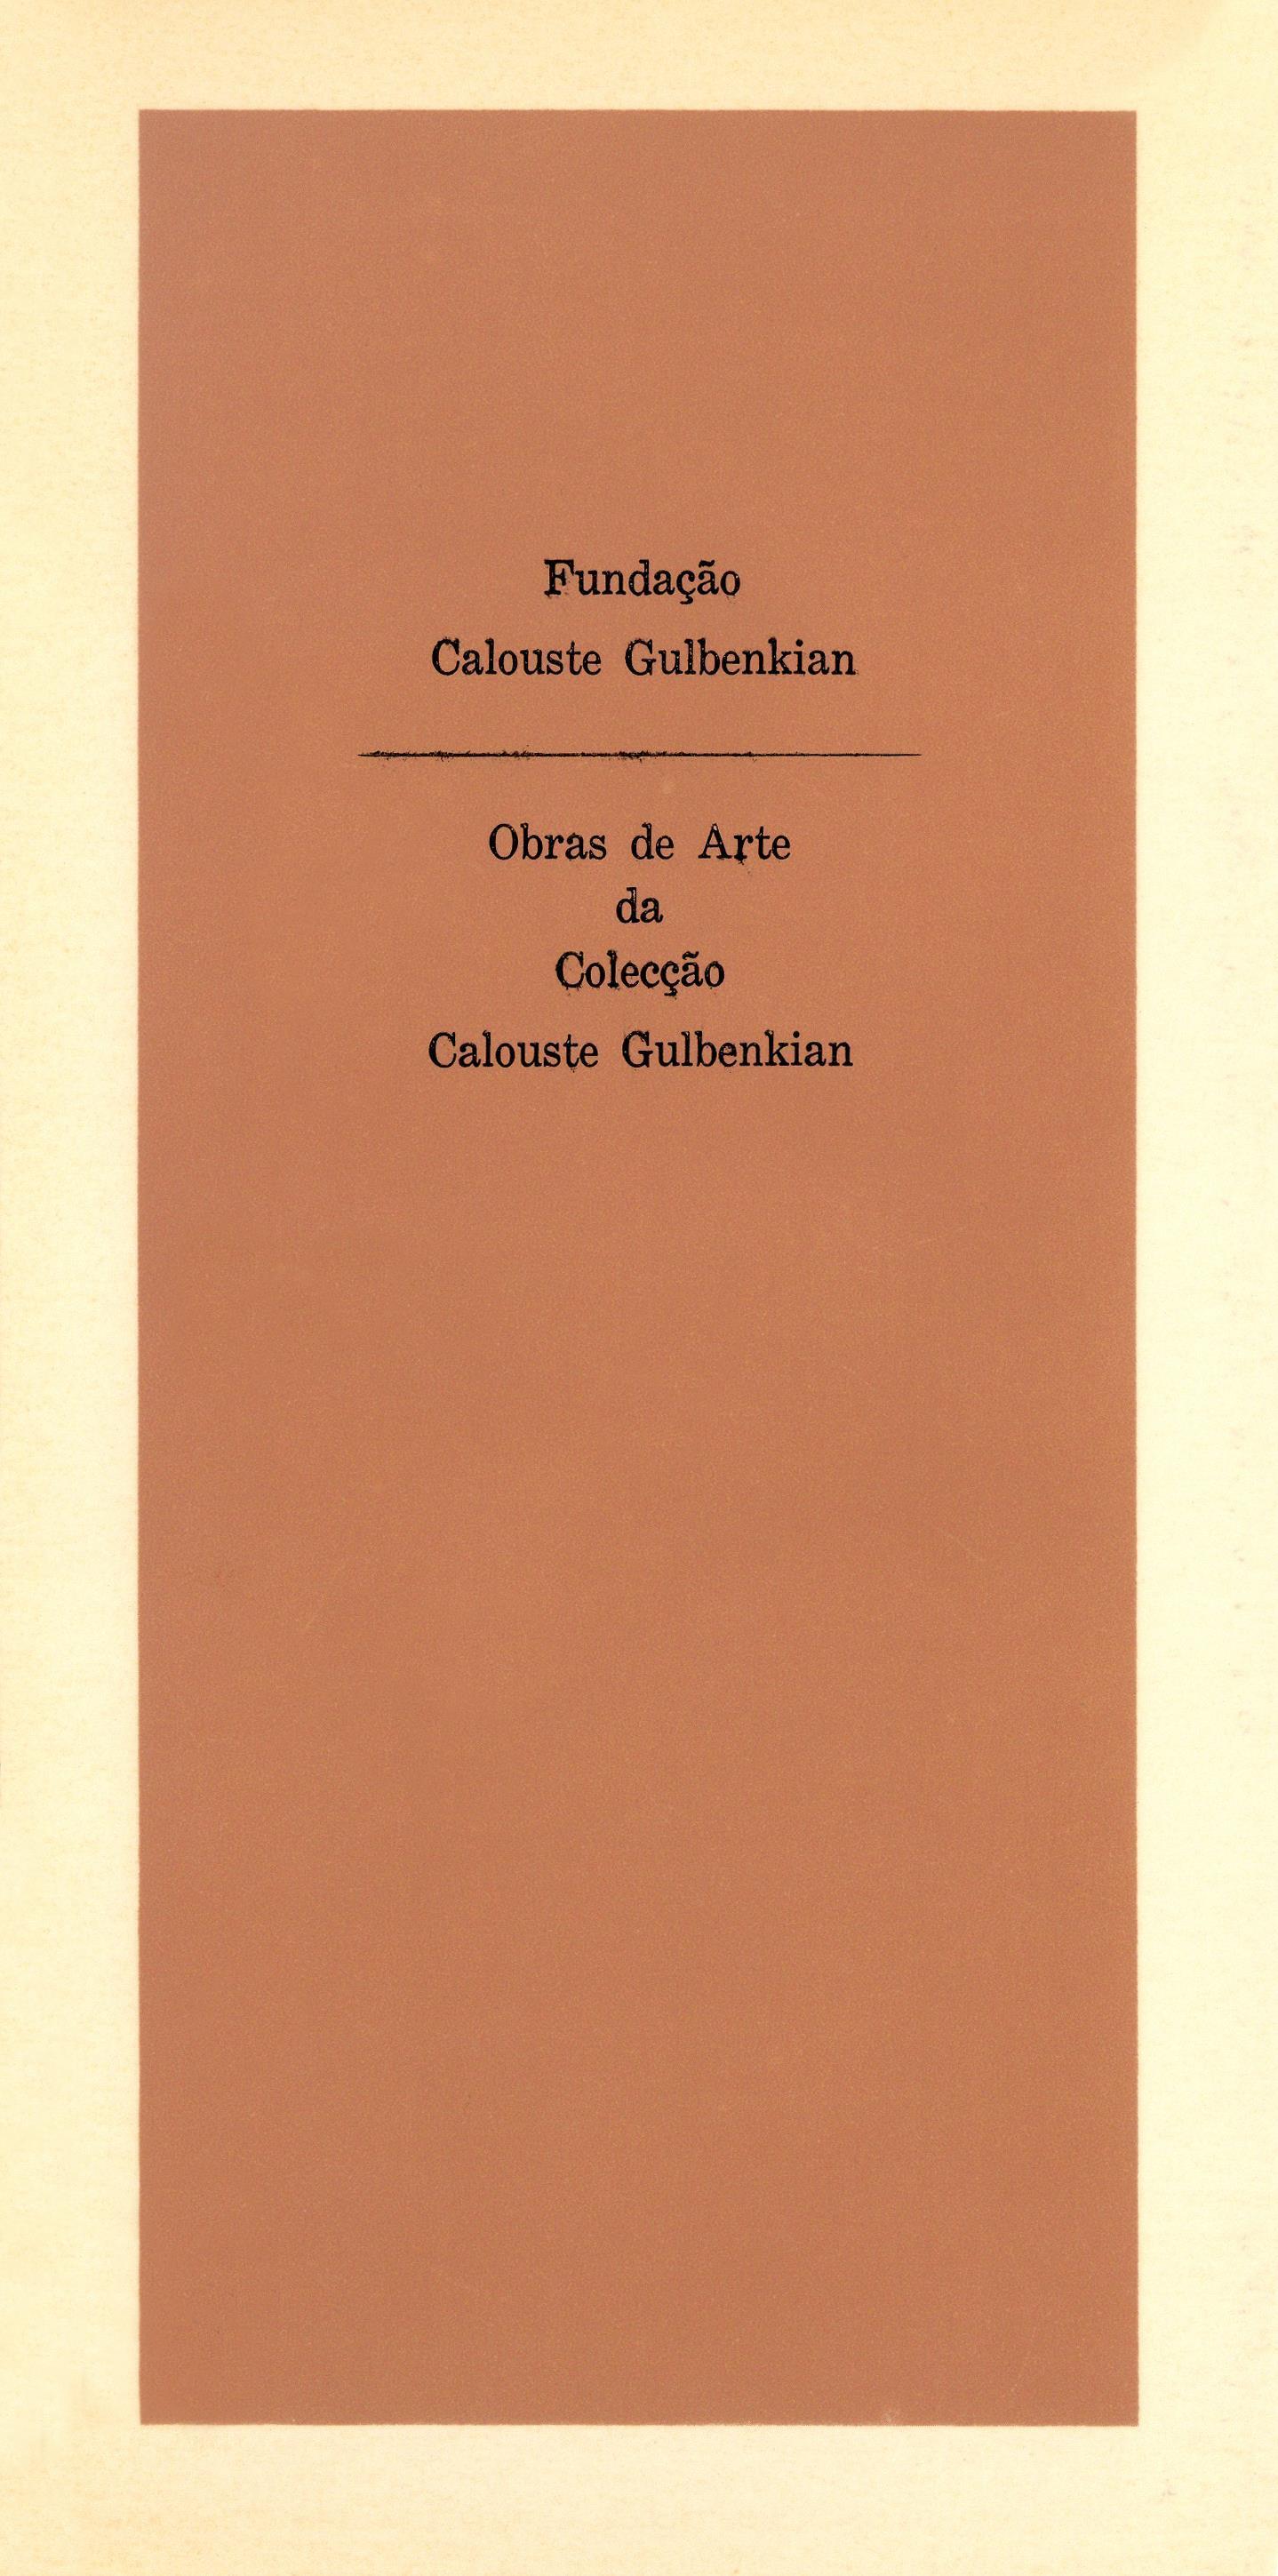 Obras de Arte da Colecção Calouste Gulbenkian